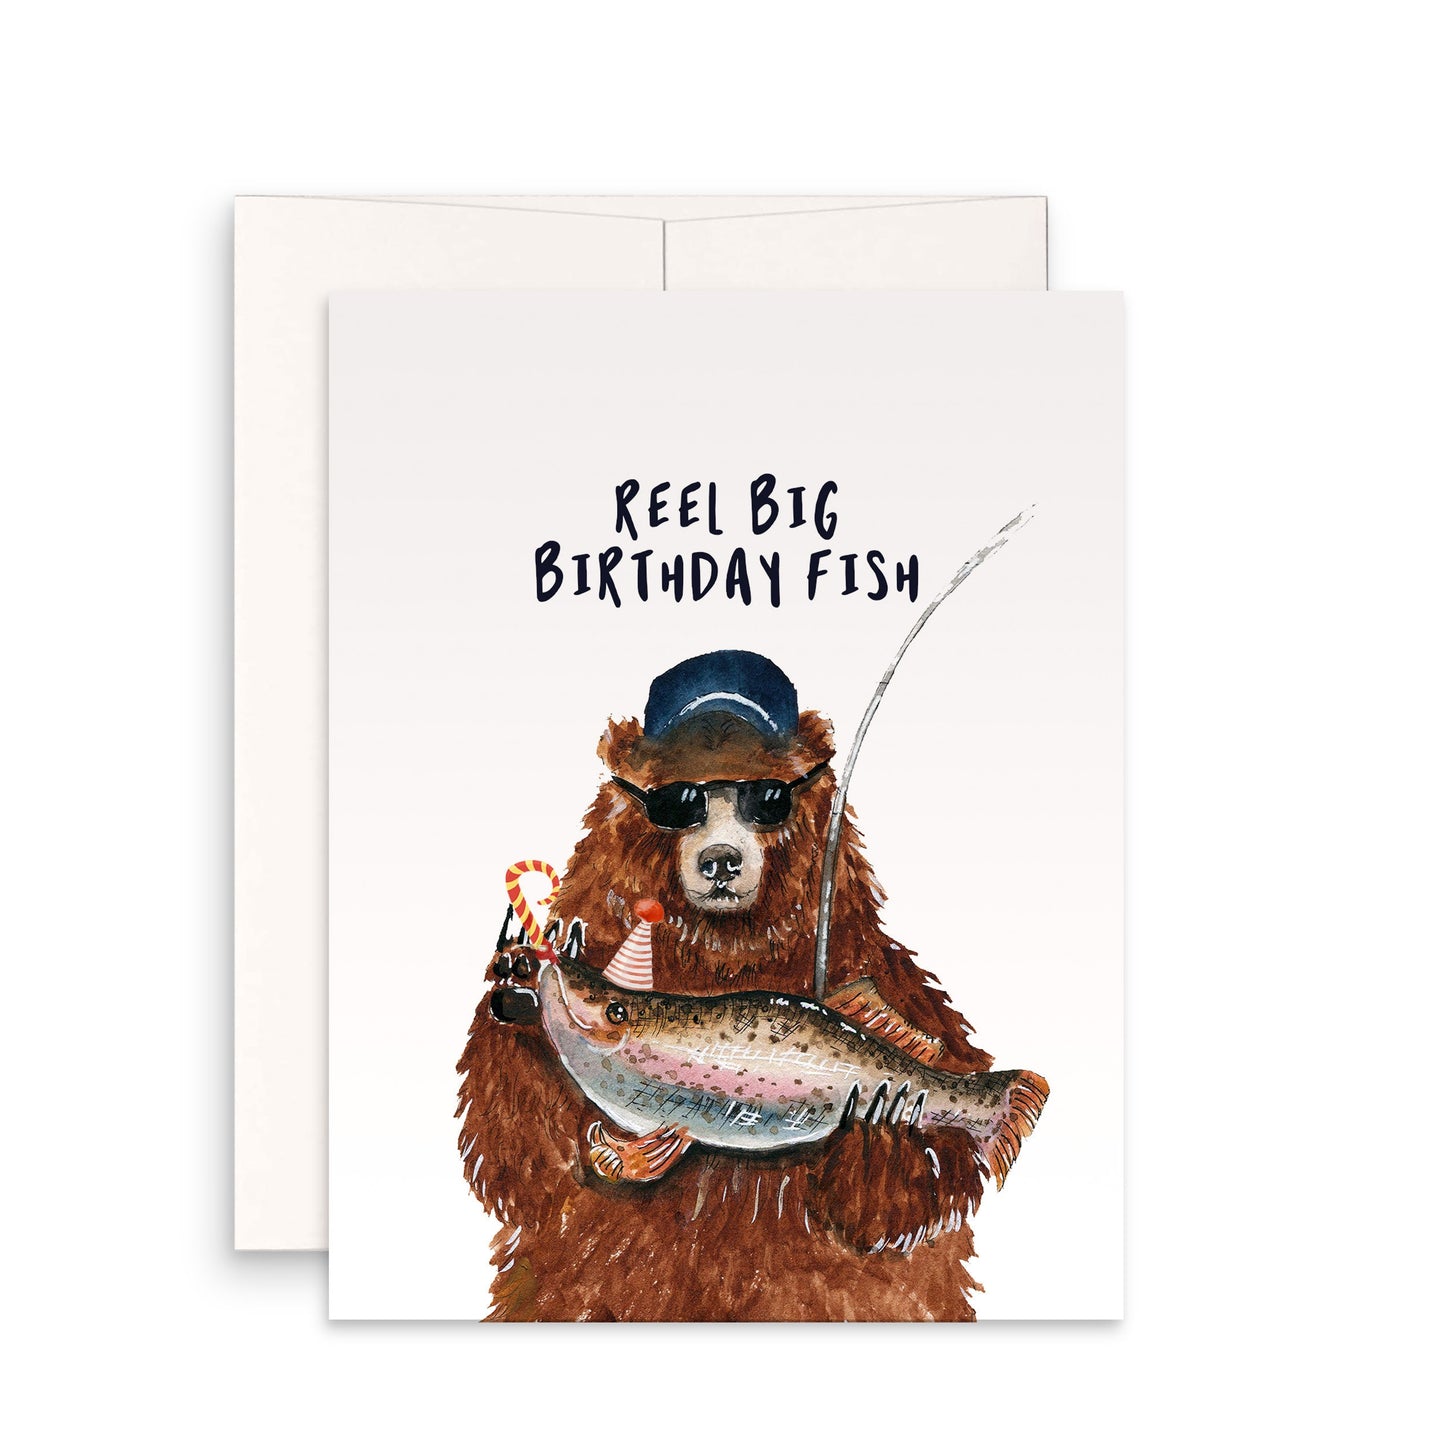 Fishing Bear Birthday Cards Funny - Reel Big Fish Dad Birthday Card For Men